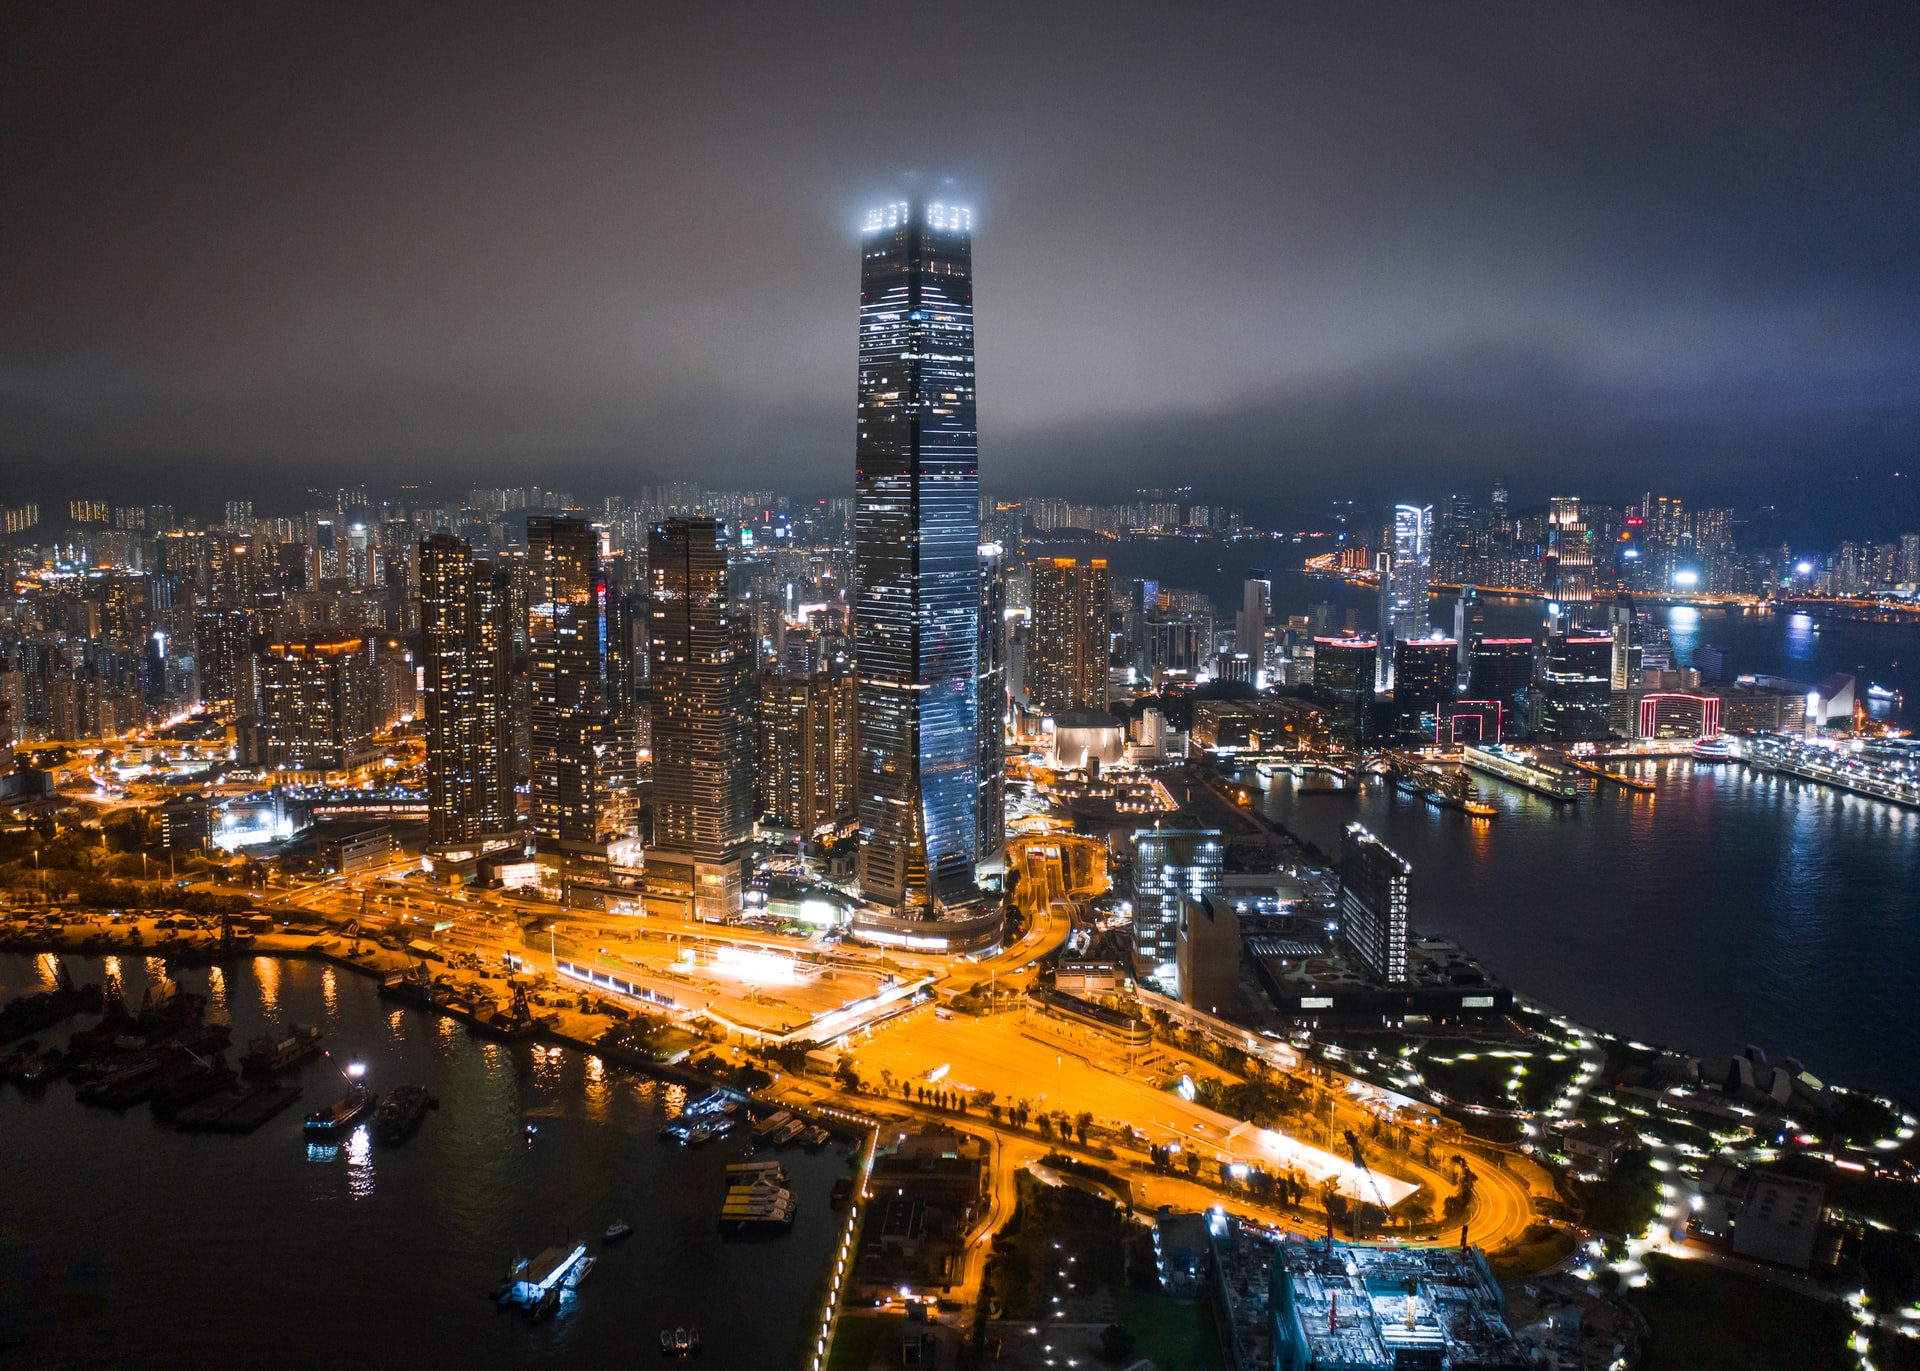 Hongkong revives